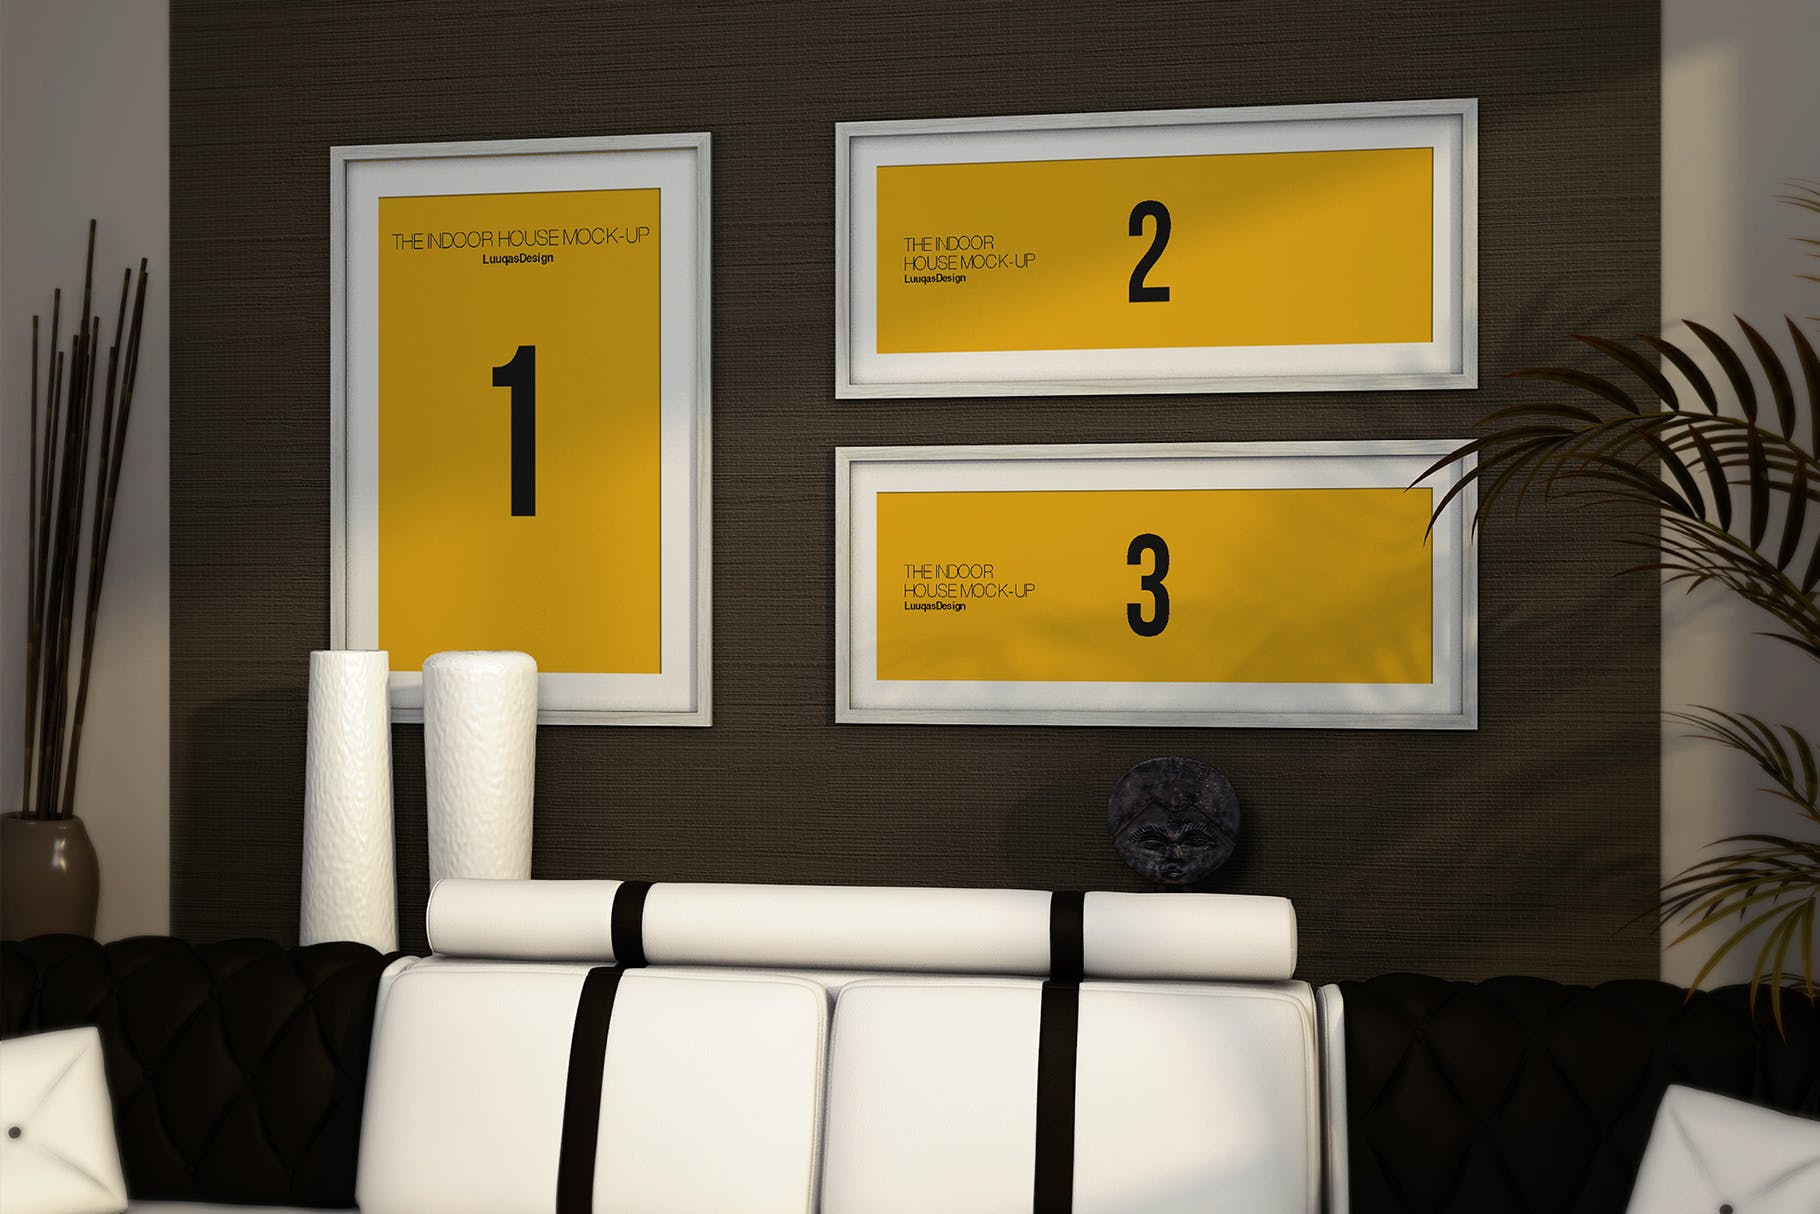 室内装饰画框艺术创作预览样机模板素材 Indoor House MockUp Templates插图(5)